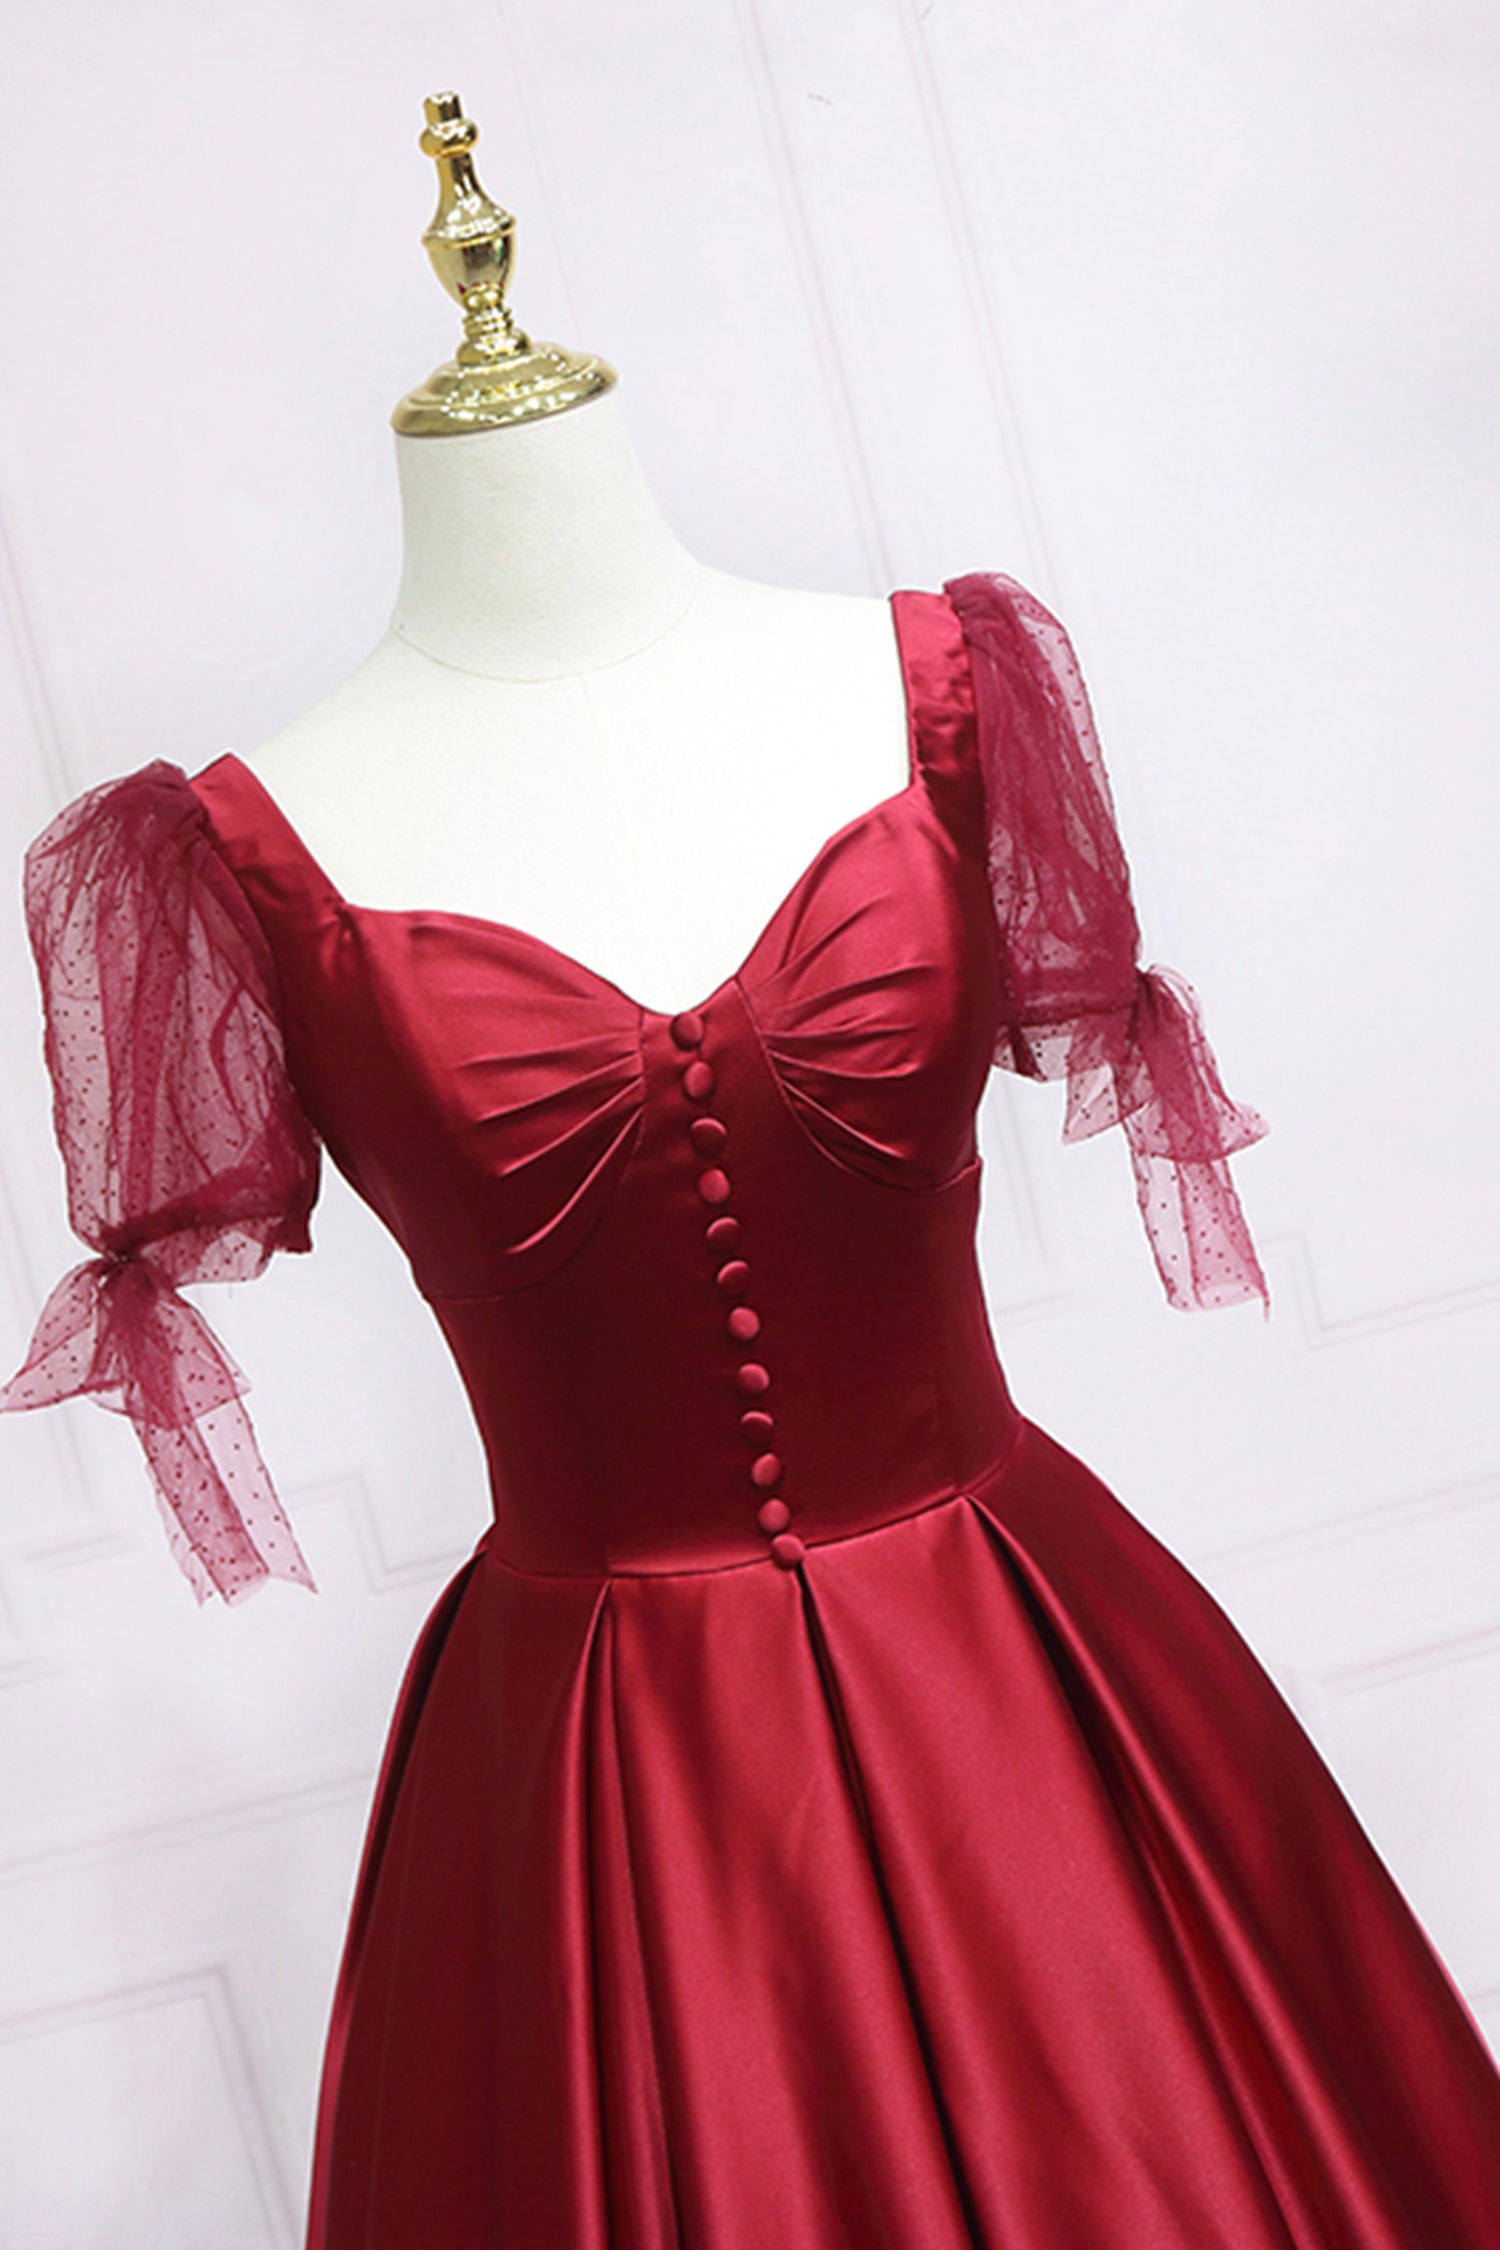 Evenning Dresses Short, Red Satin Sweetheart Neckline Long Formal Dress, A-Line Evening Graduation Dress